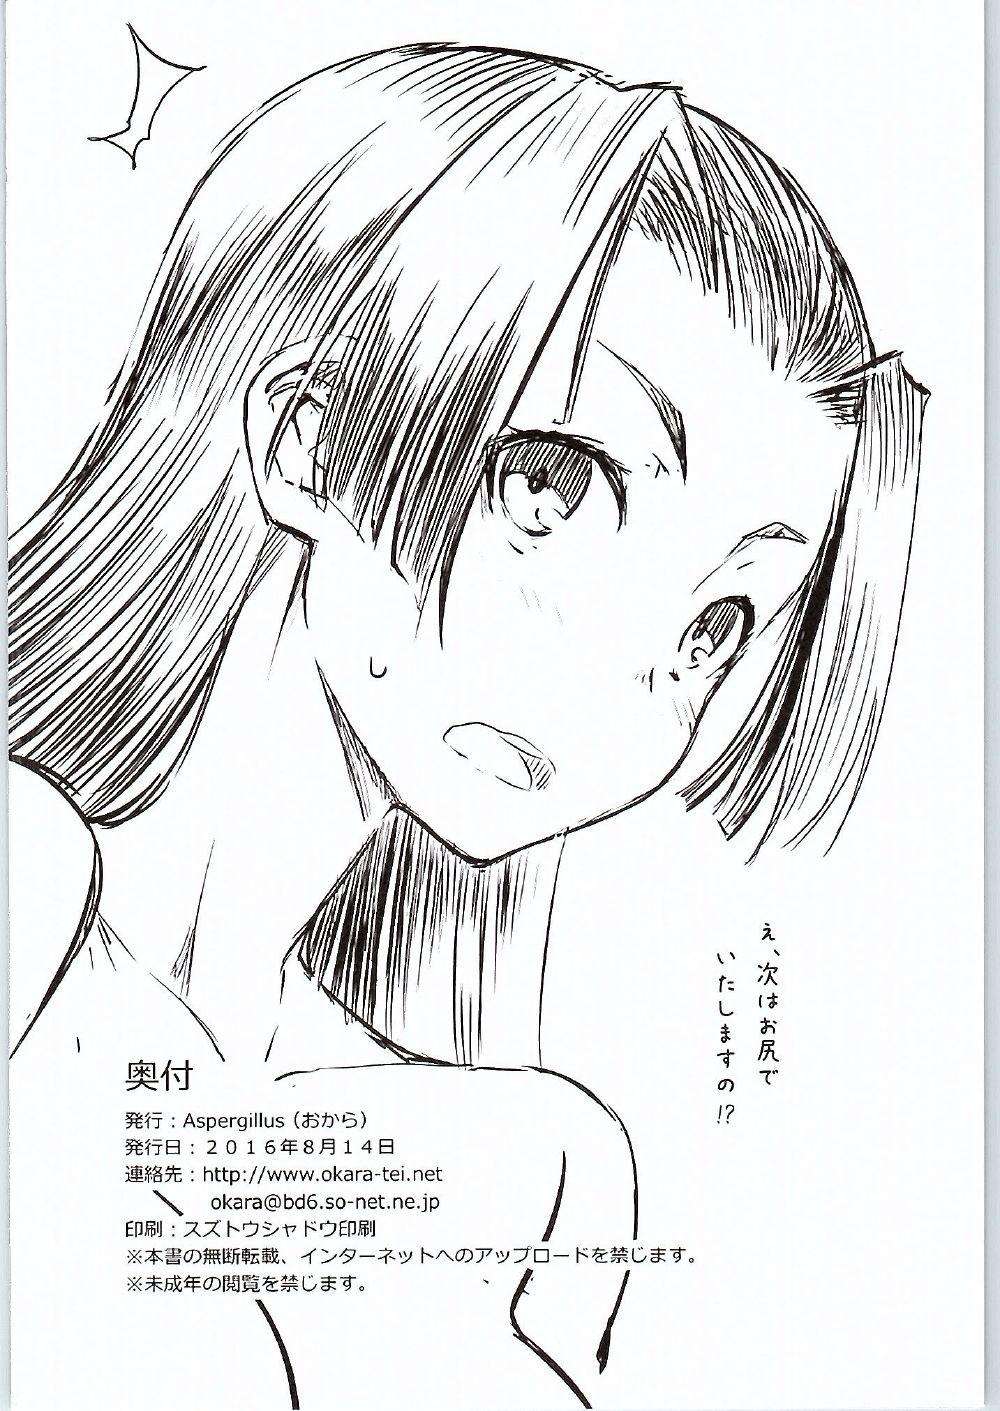 Esposa BEAUTIFUL SHINE - Toaru kagaku no railgun Dancing - Page 25